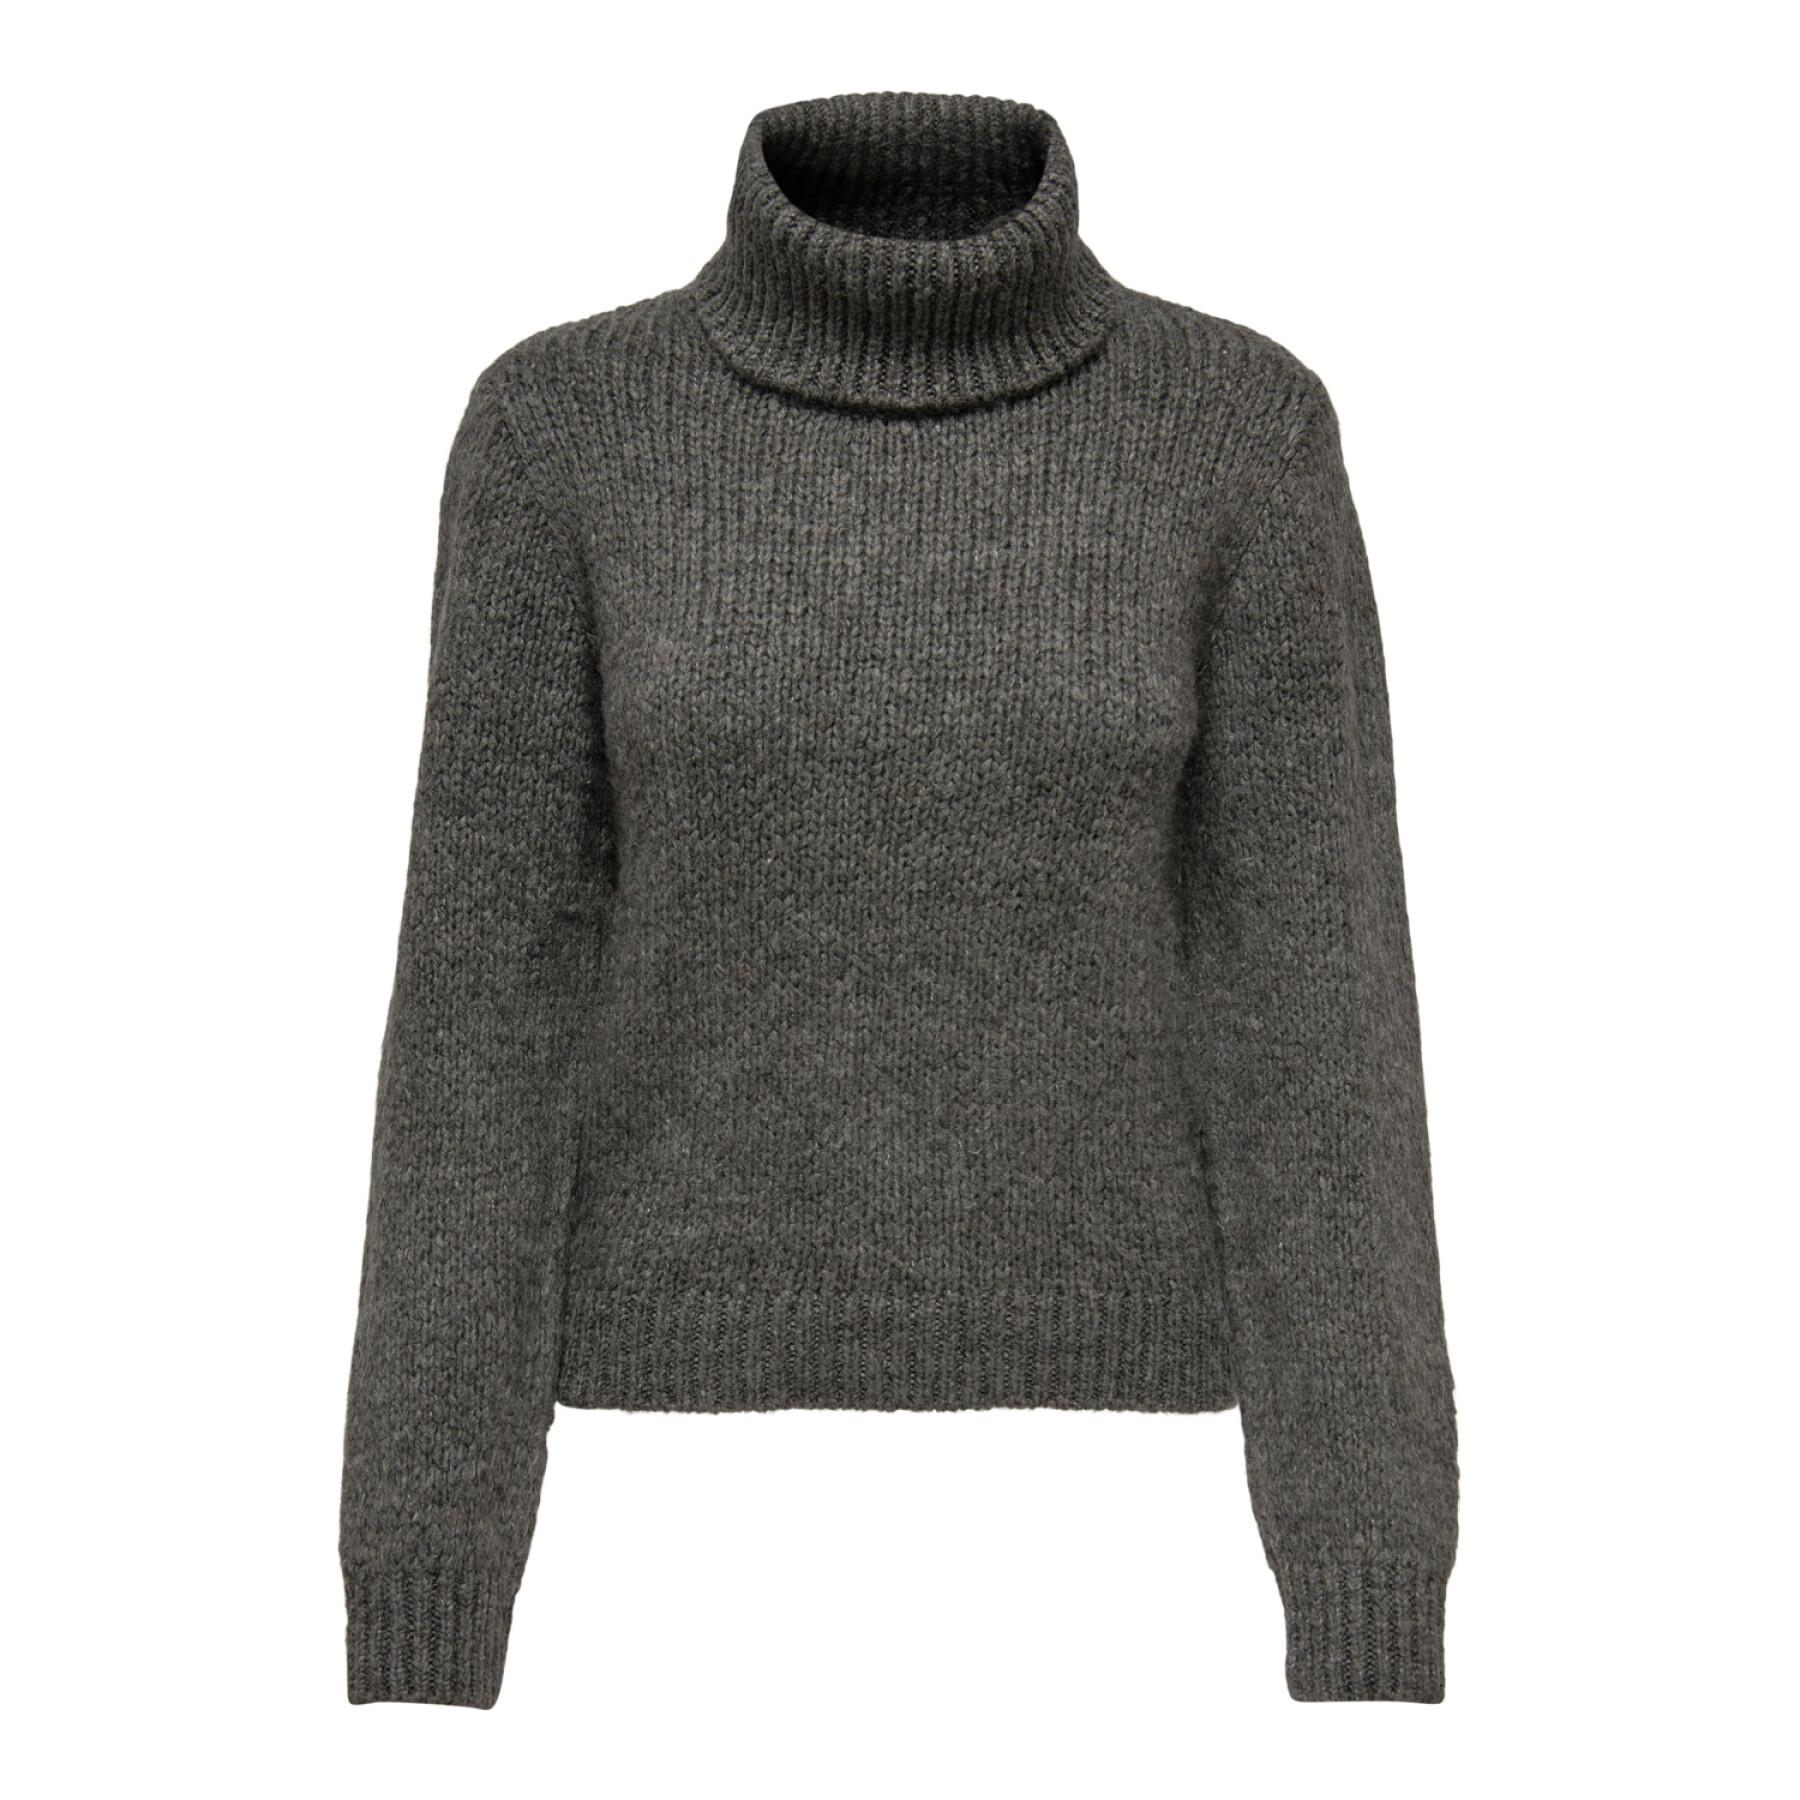 Women's knitted turtleneck sweater JDY Dinea